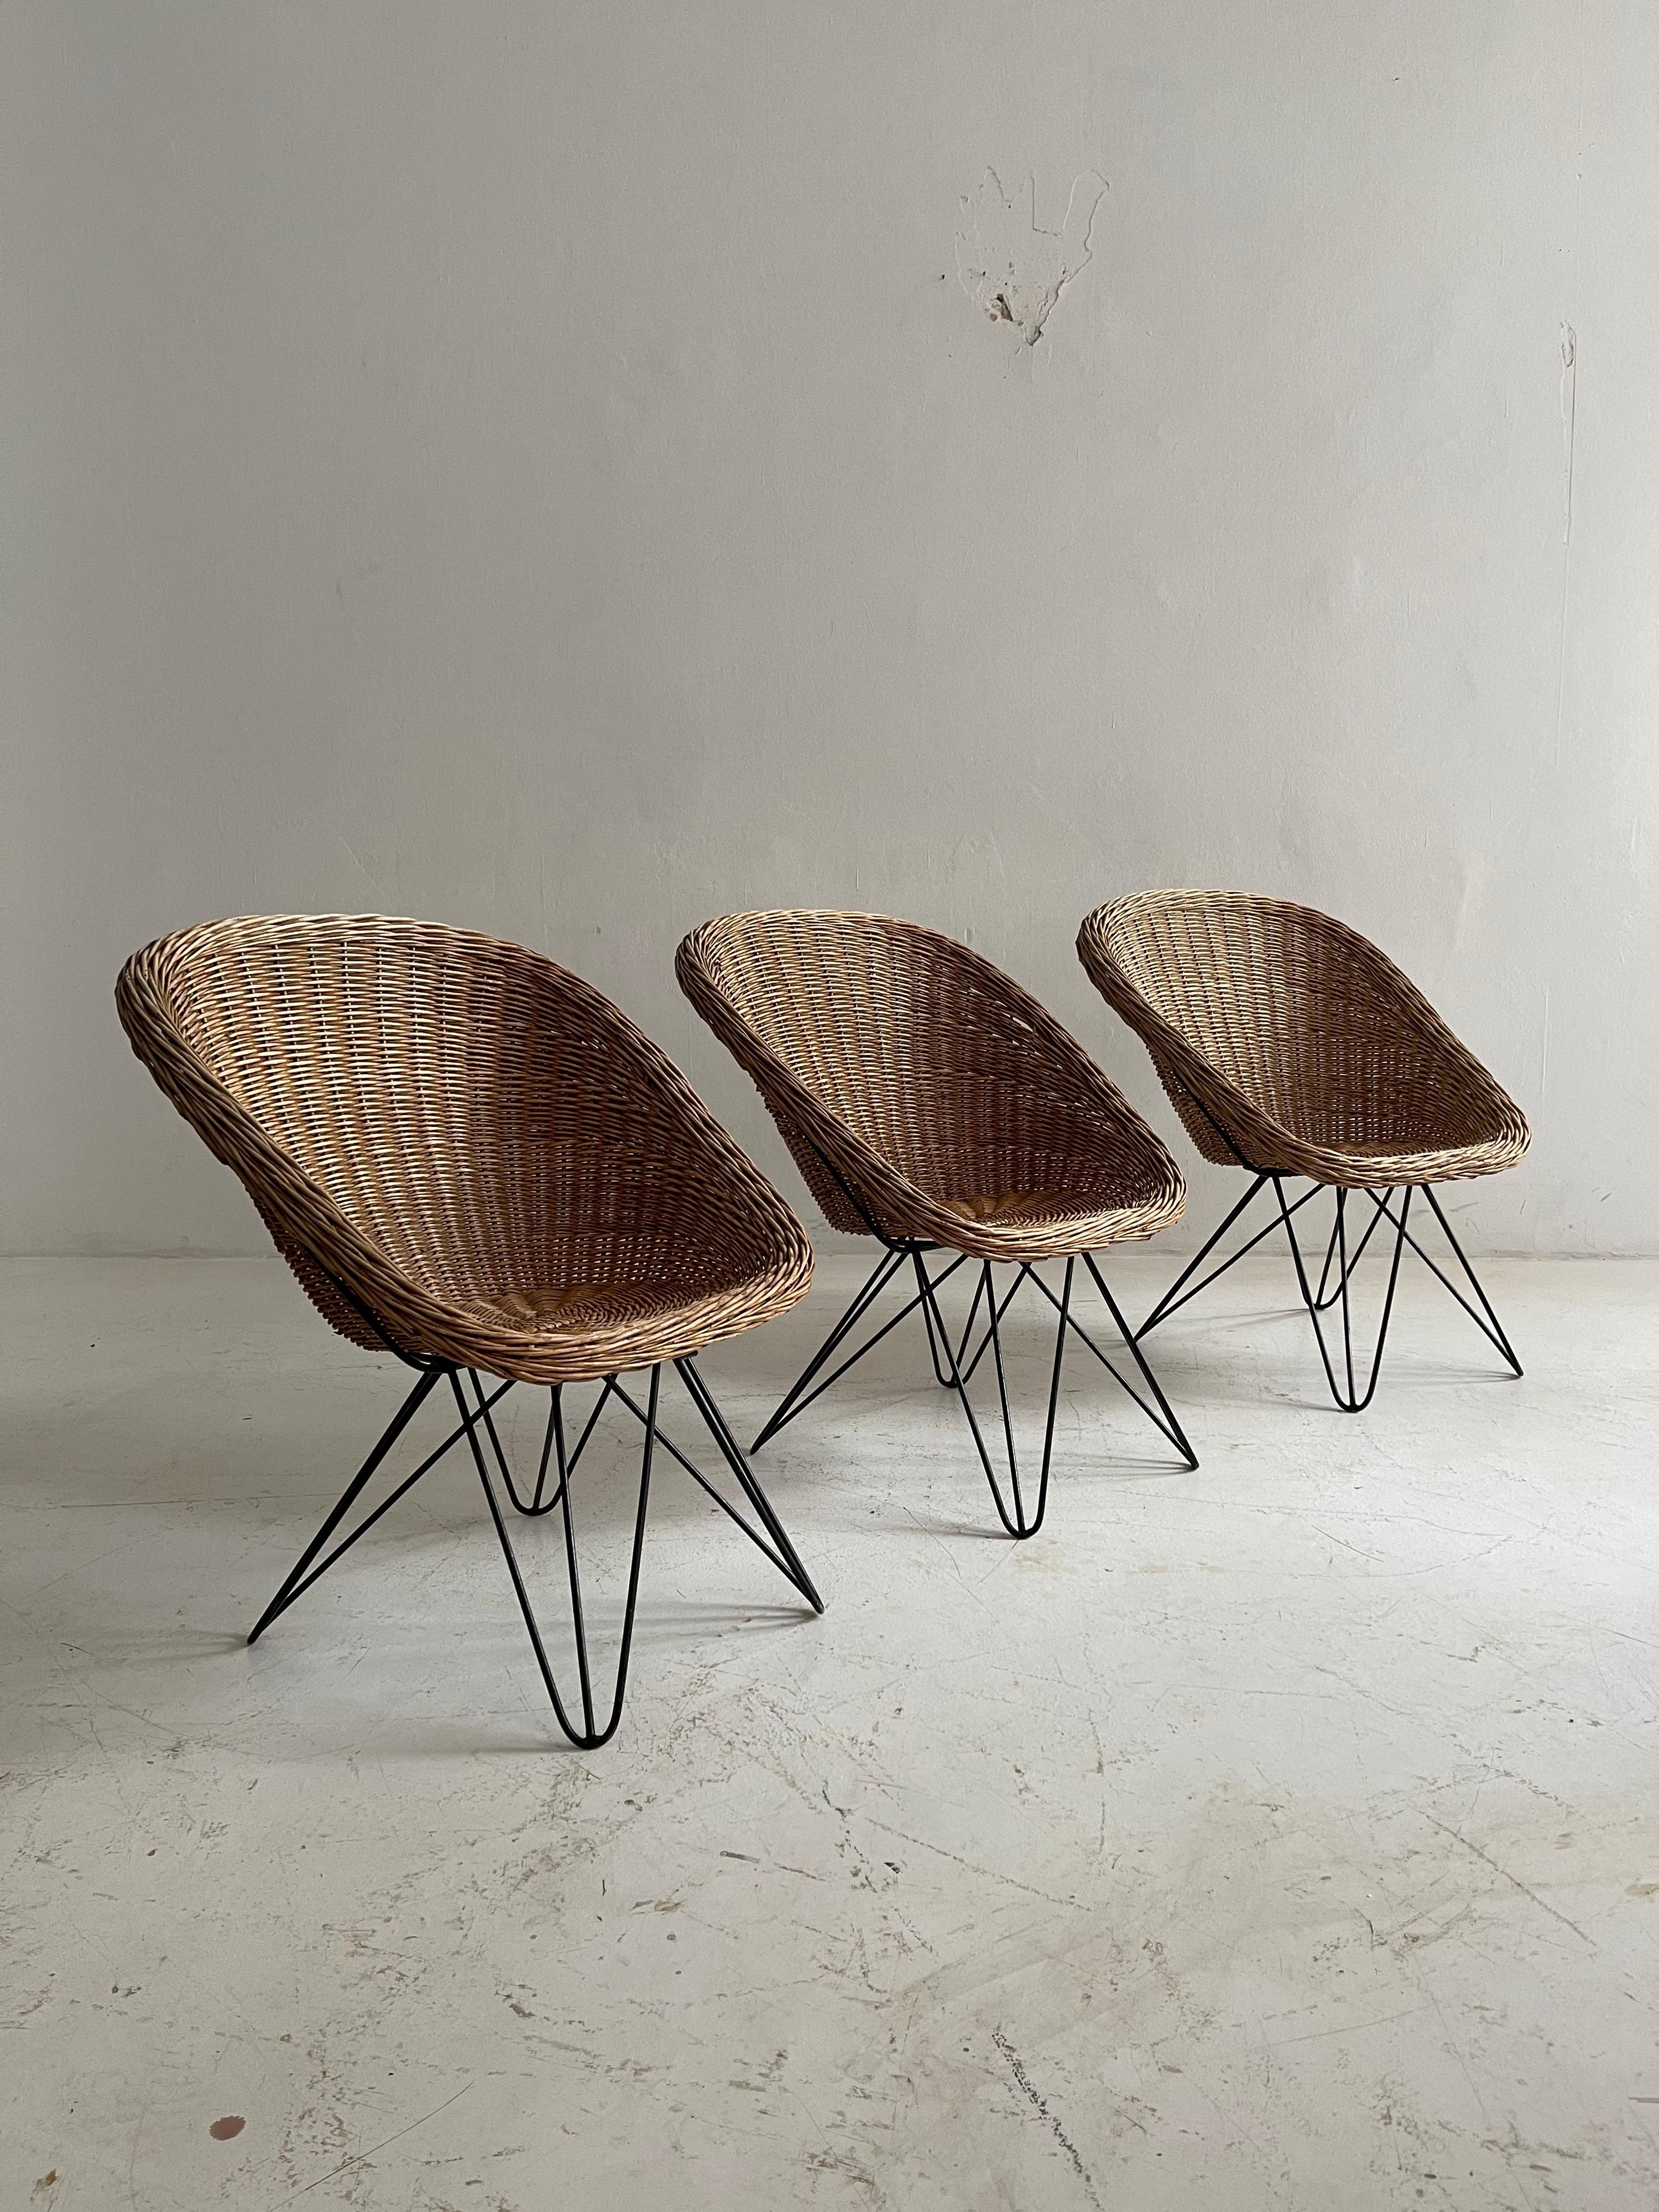 Barrel wicker lounge chairs by Sonett, Austria, 1950s.